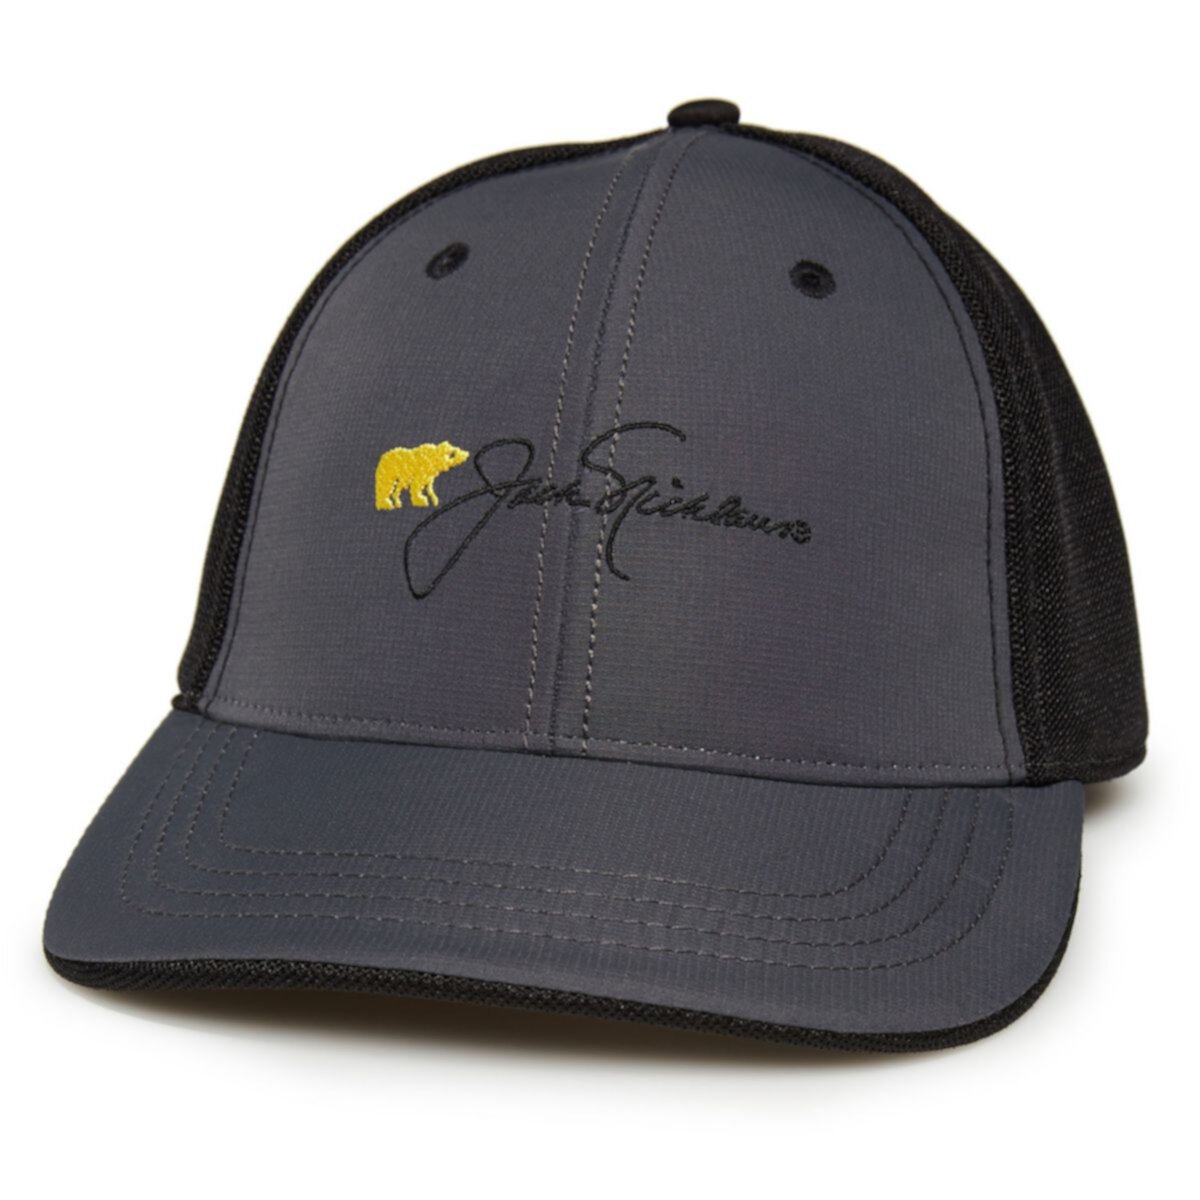 Мужская текстурированная сетчатая кепка для гольфа Jack Nicklaus Jack Nicklaus